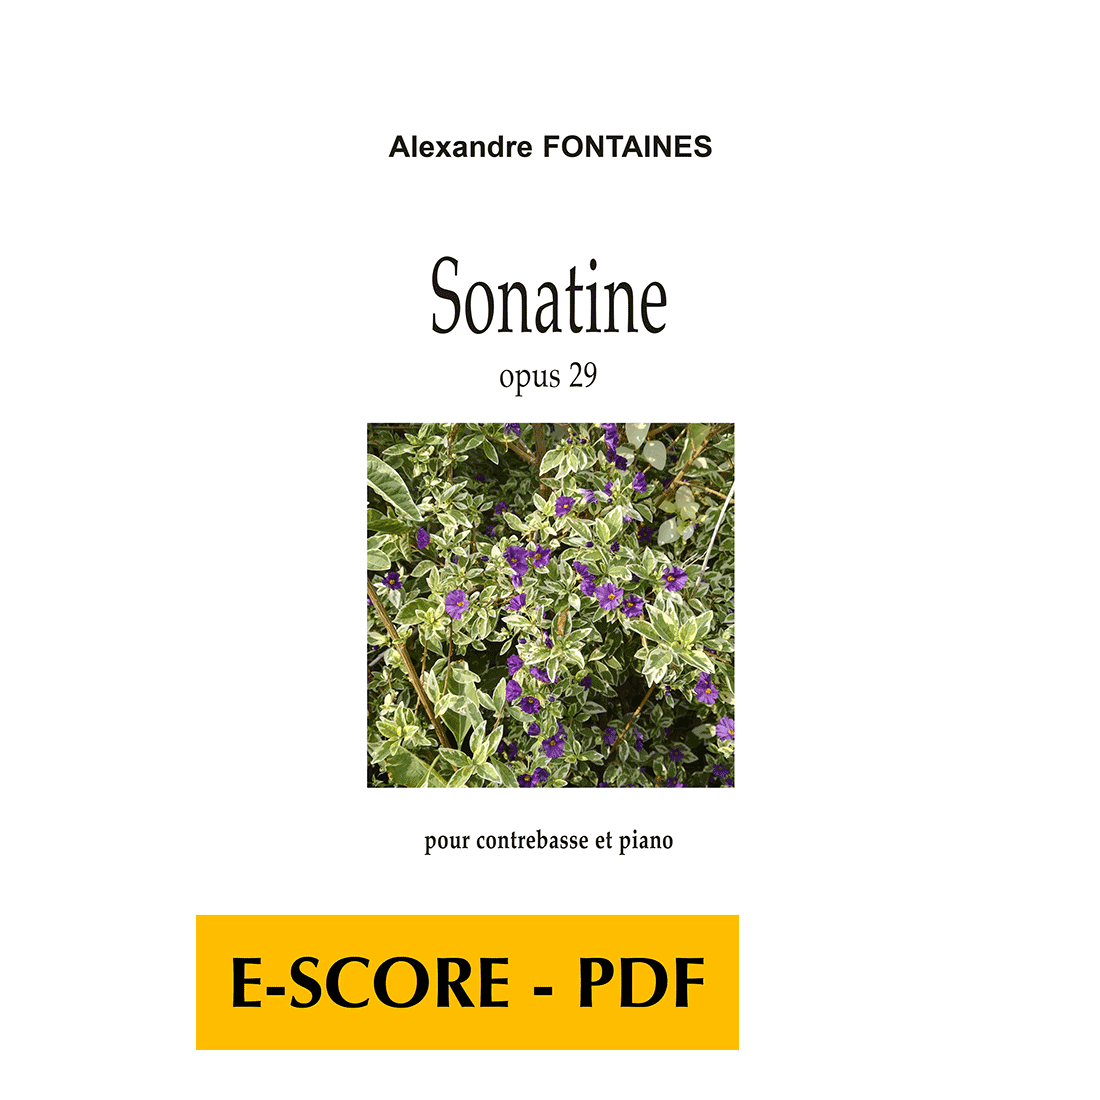 Sonata for double bass and piano - E-score PDF